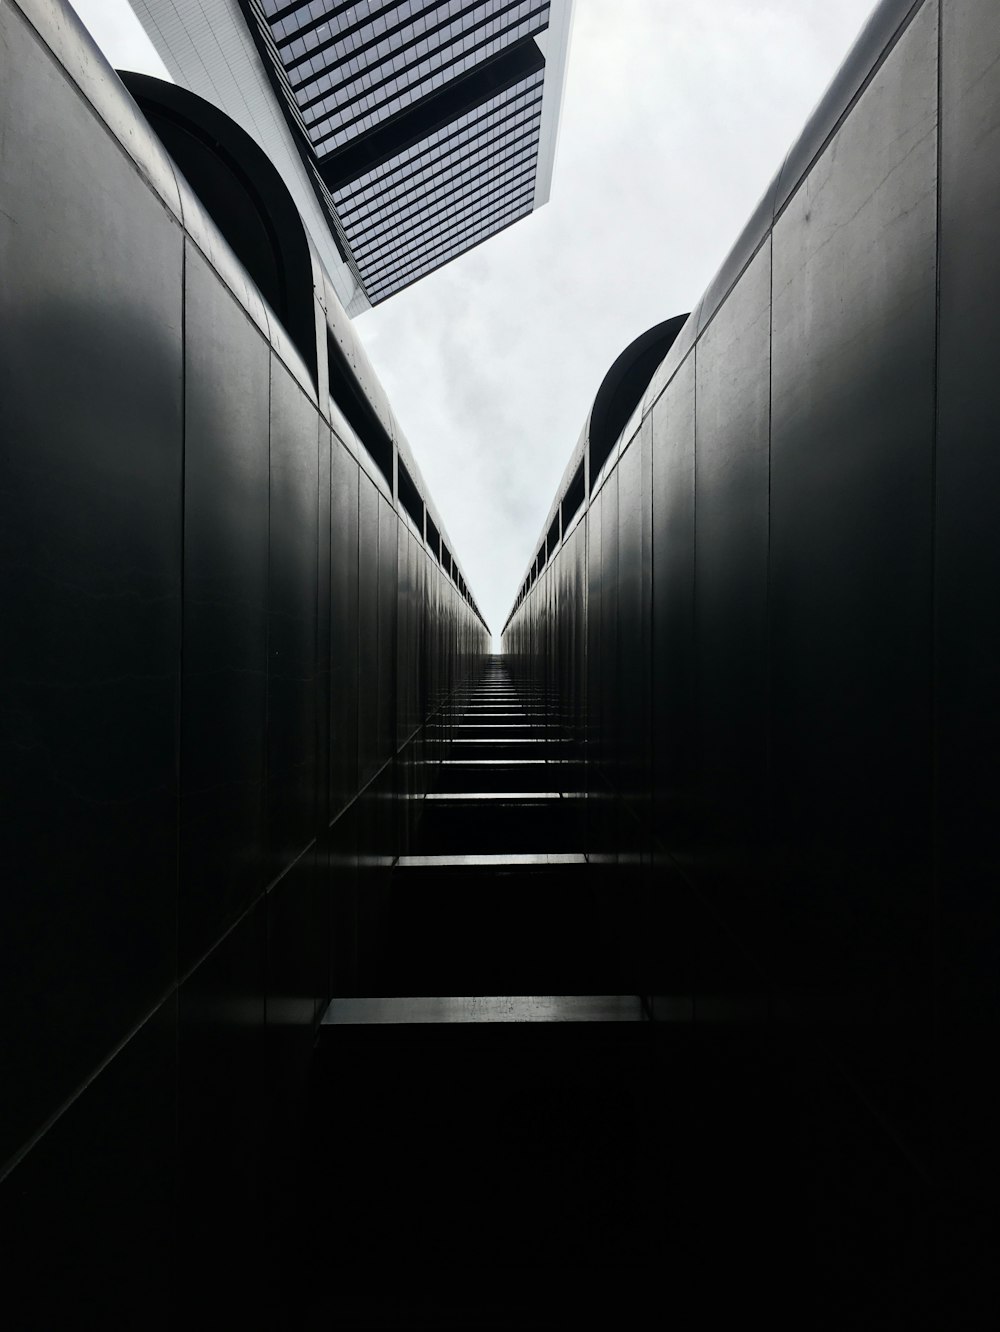 fotografia de baixo ângulo do edifício cinzento